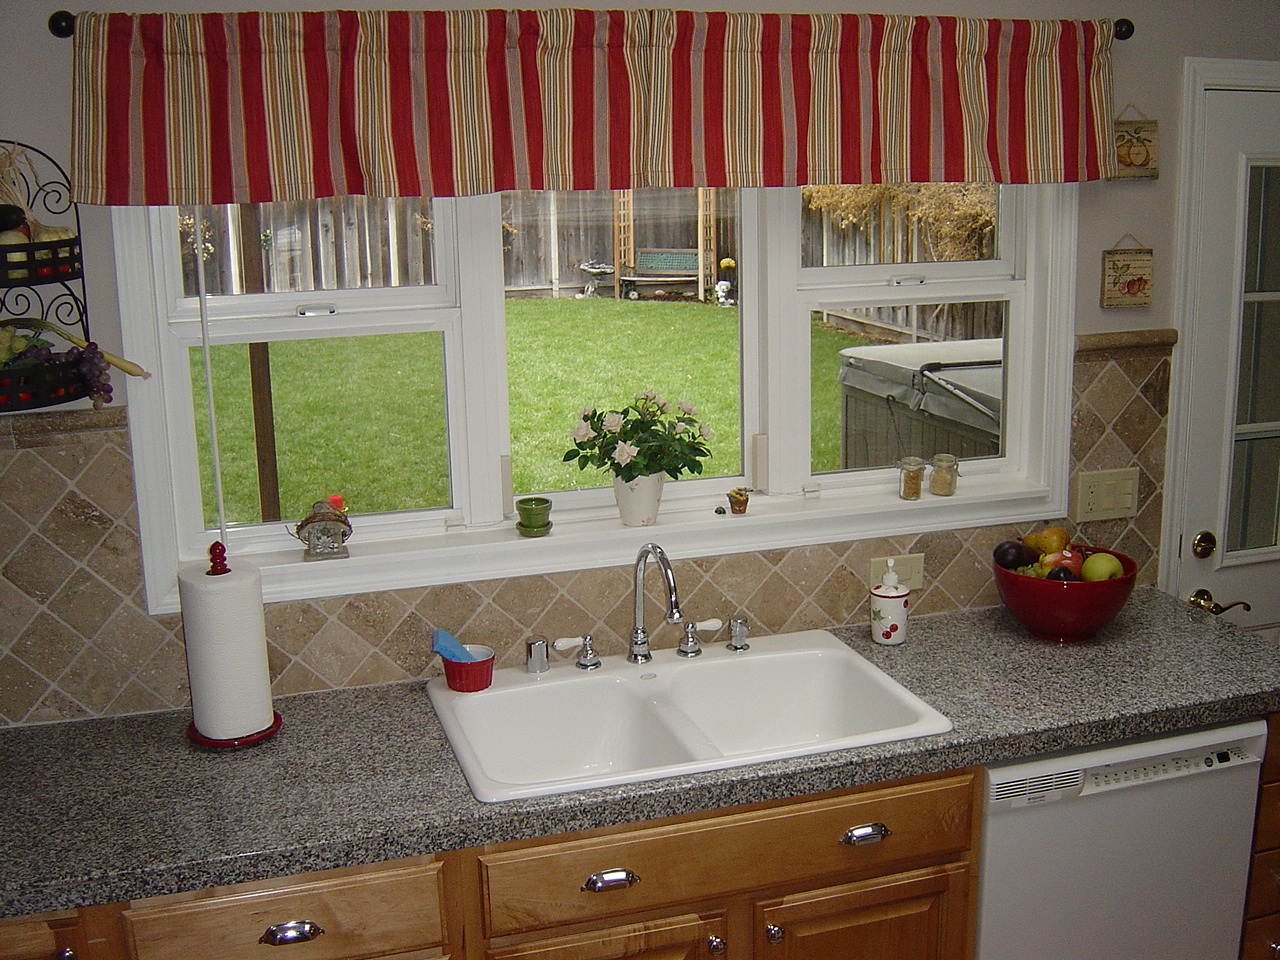 Kitchen Curtain Designs ~ Design